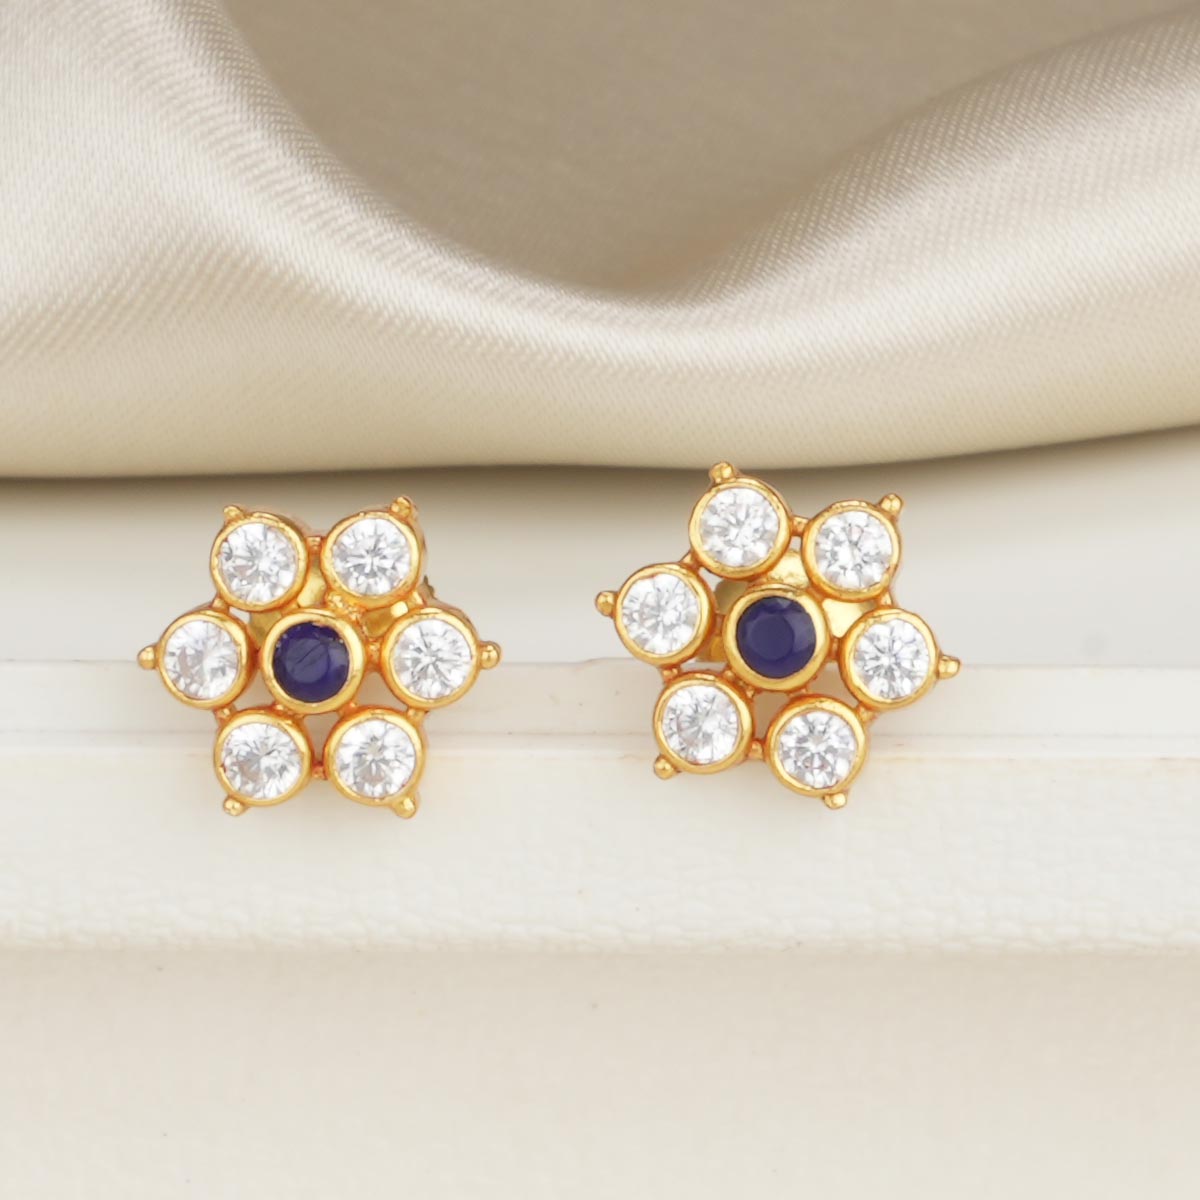 Shop Light Blue Stone White Polish Earrings Online at Best Price | Cbazaar